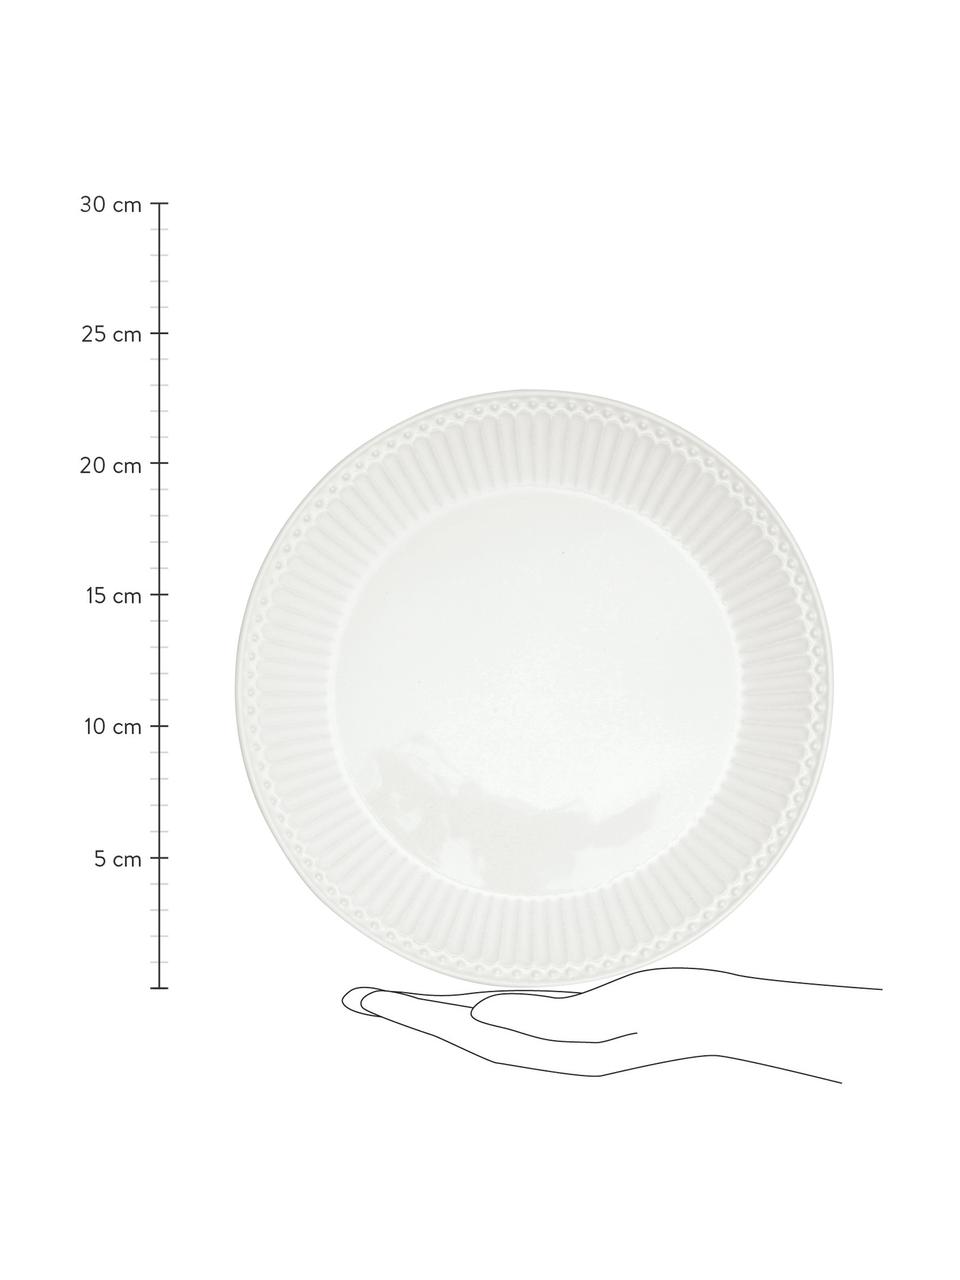 Handgemaakte ontbijtborden Alice in wit met reliëfdesign, 2 stuks, Porselein, Wit, Ø 23 cm